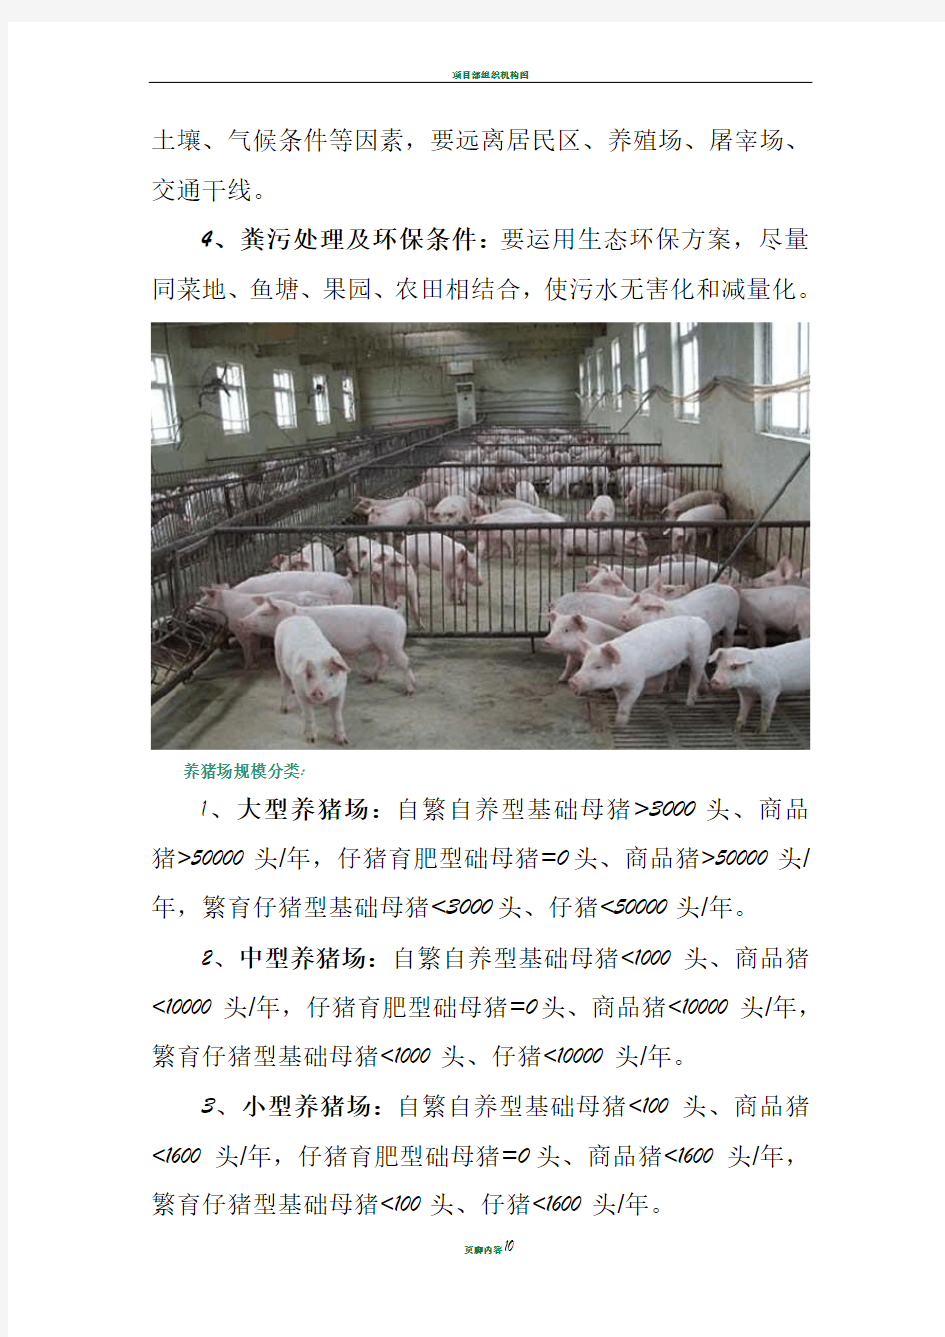 标准化养猪场建设方案